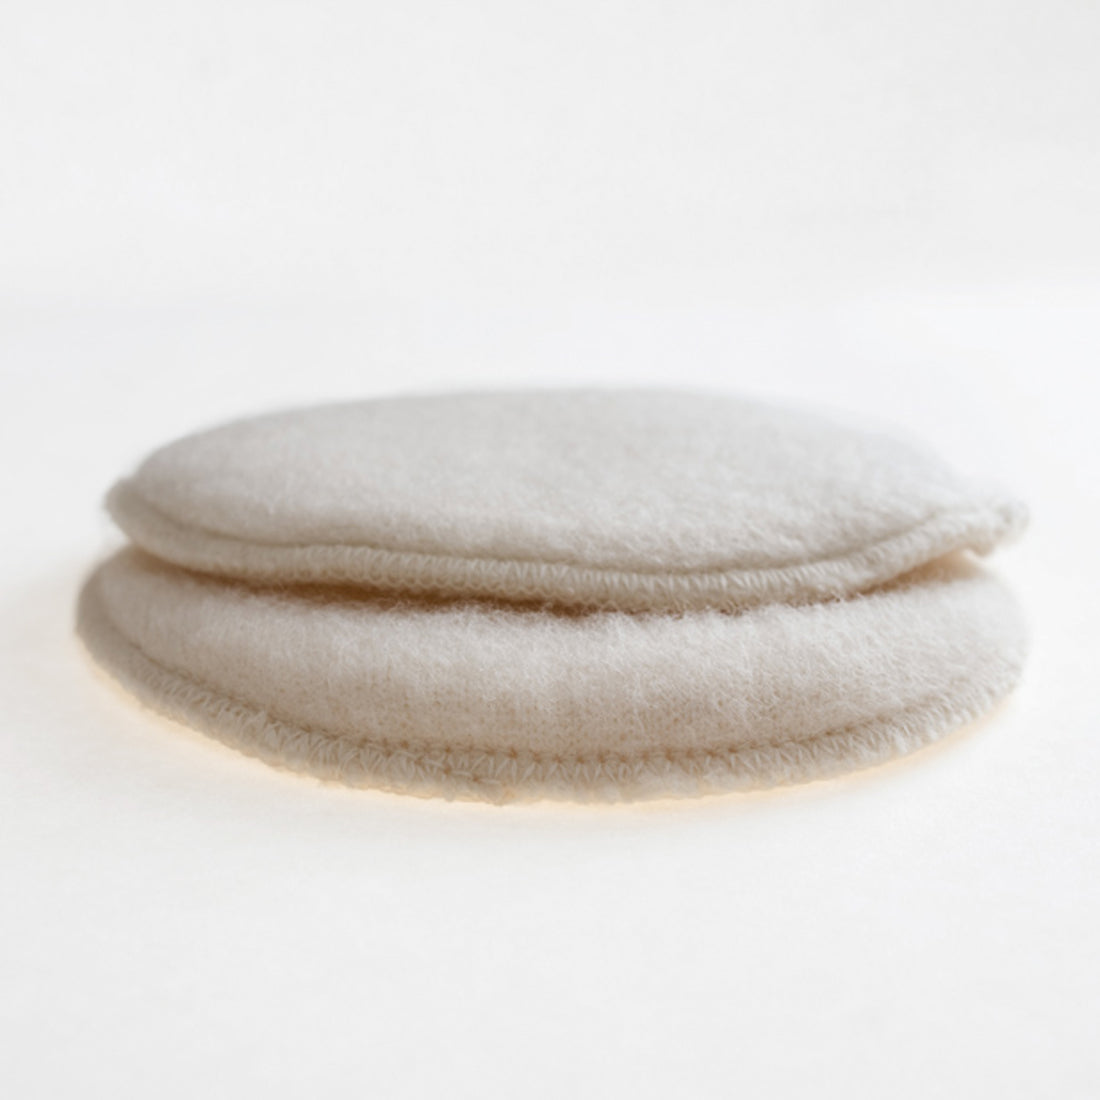 LANACare Organic Merino Wool Nursing Pads, Style Ekstra- For Women with Heavier Leaking